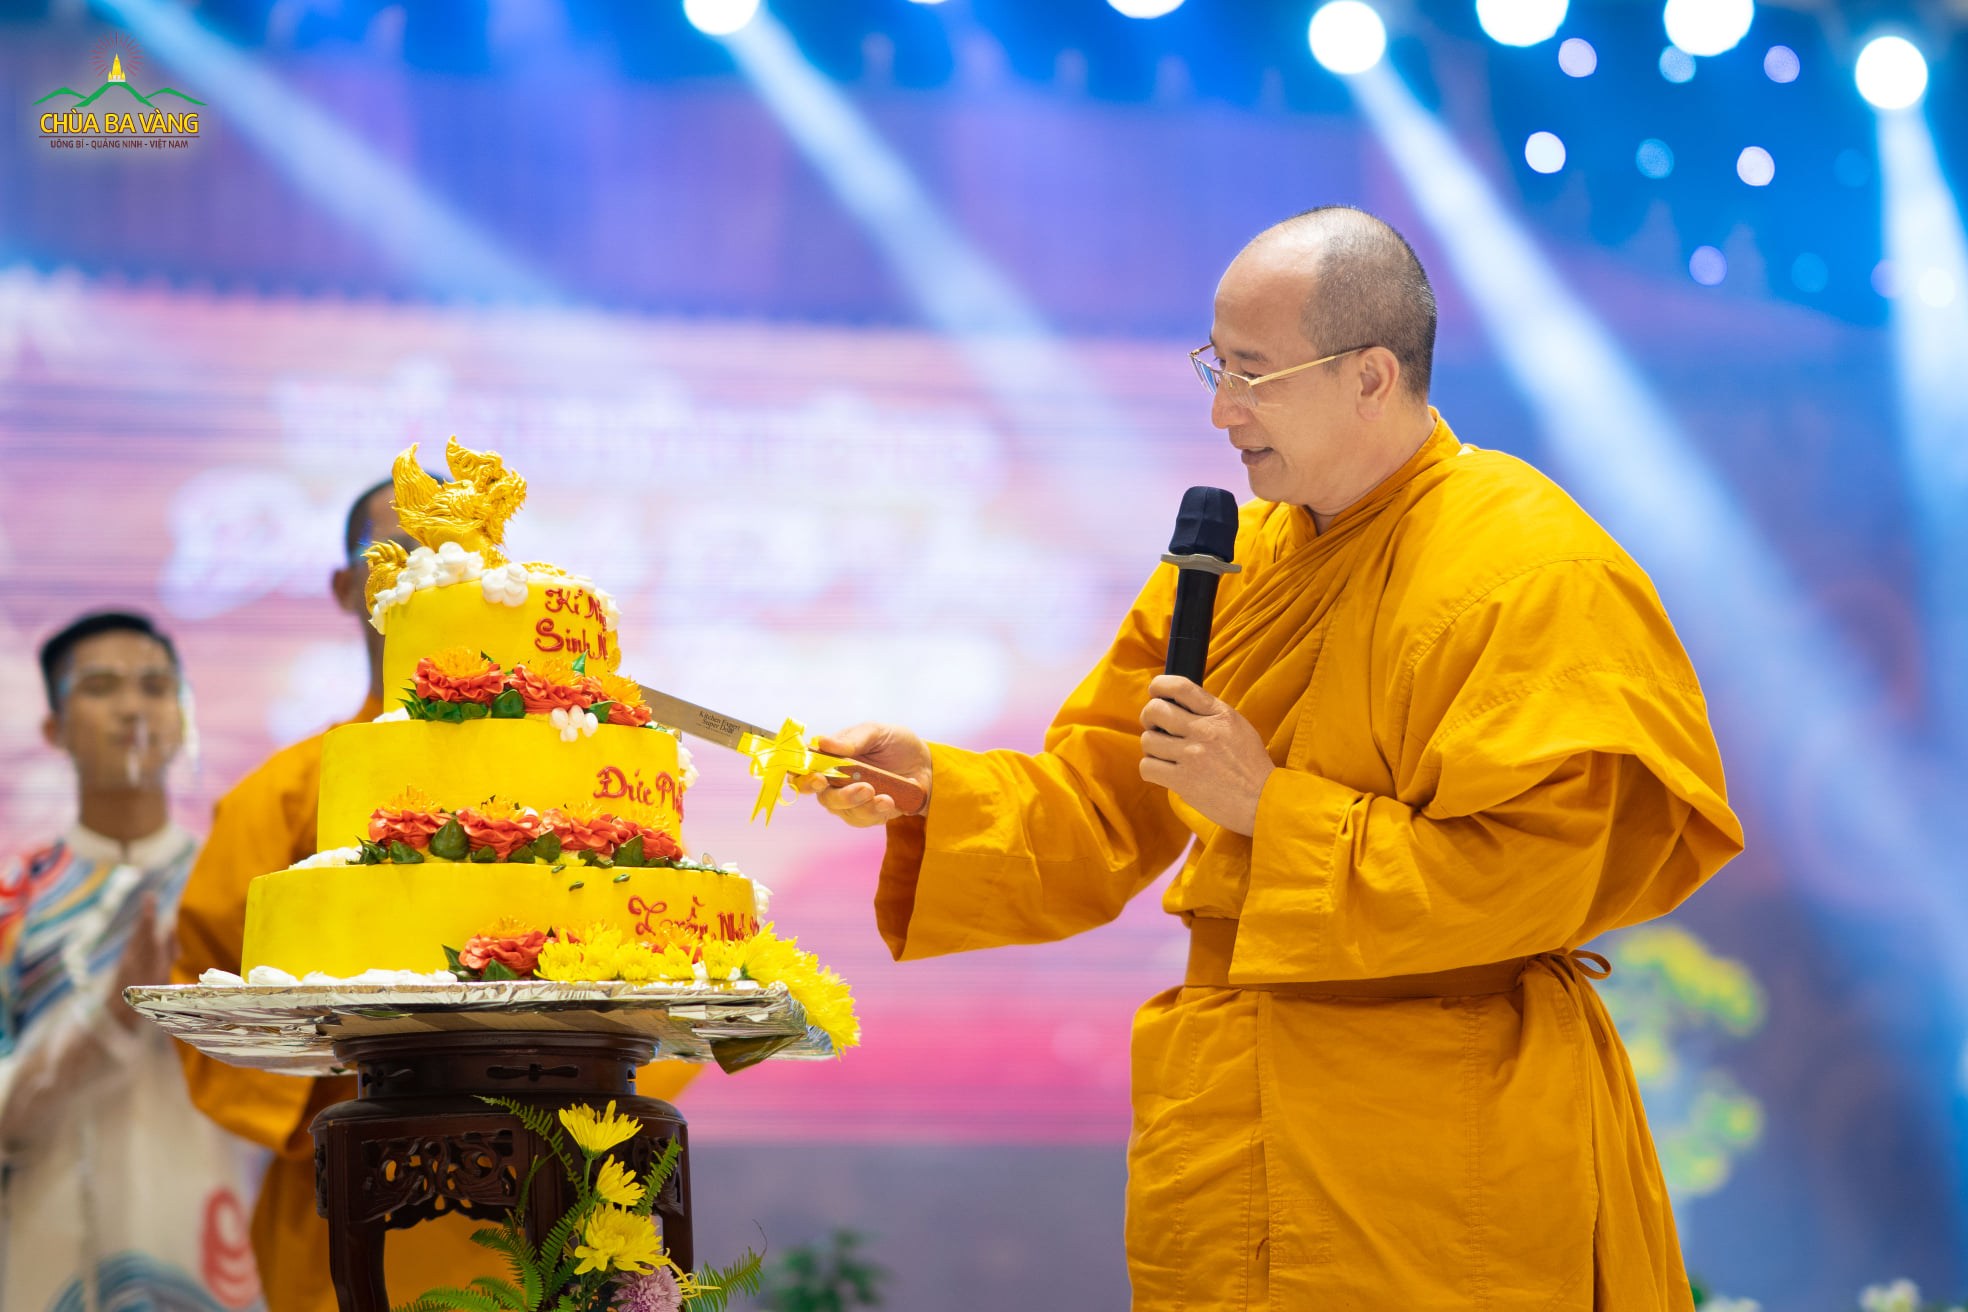 Sư Phụ Thích Trúc Thái Minh cắt bánh kỷ niệm sinh nhật Đức Phật Hoàng Trần Nhân Tông làm bốn phần tượng trưng cho bốn chân lý Đức Phật đã chứng ngộ đồng thời cũng là mong nguyện cho bốn phương đều được hòa hợp